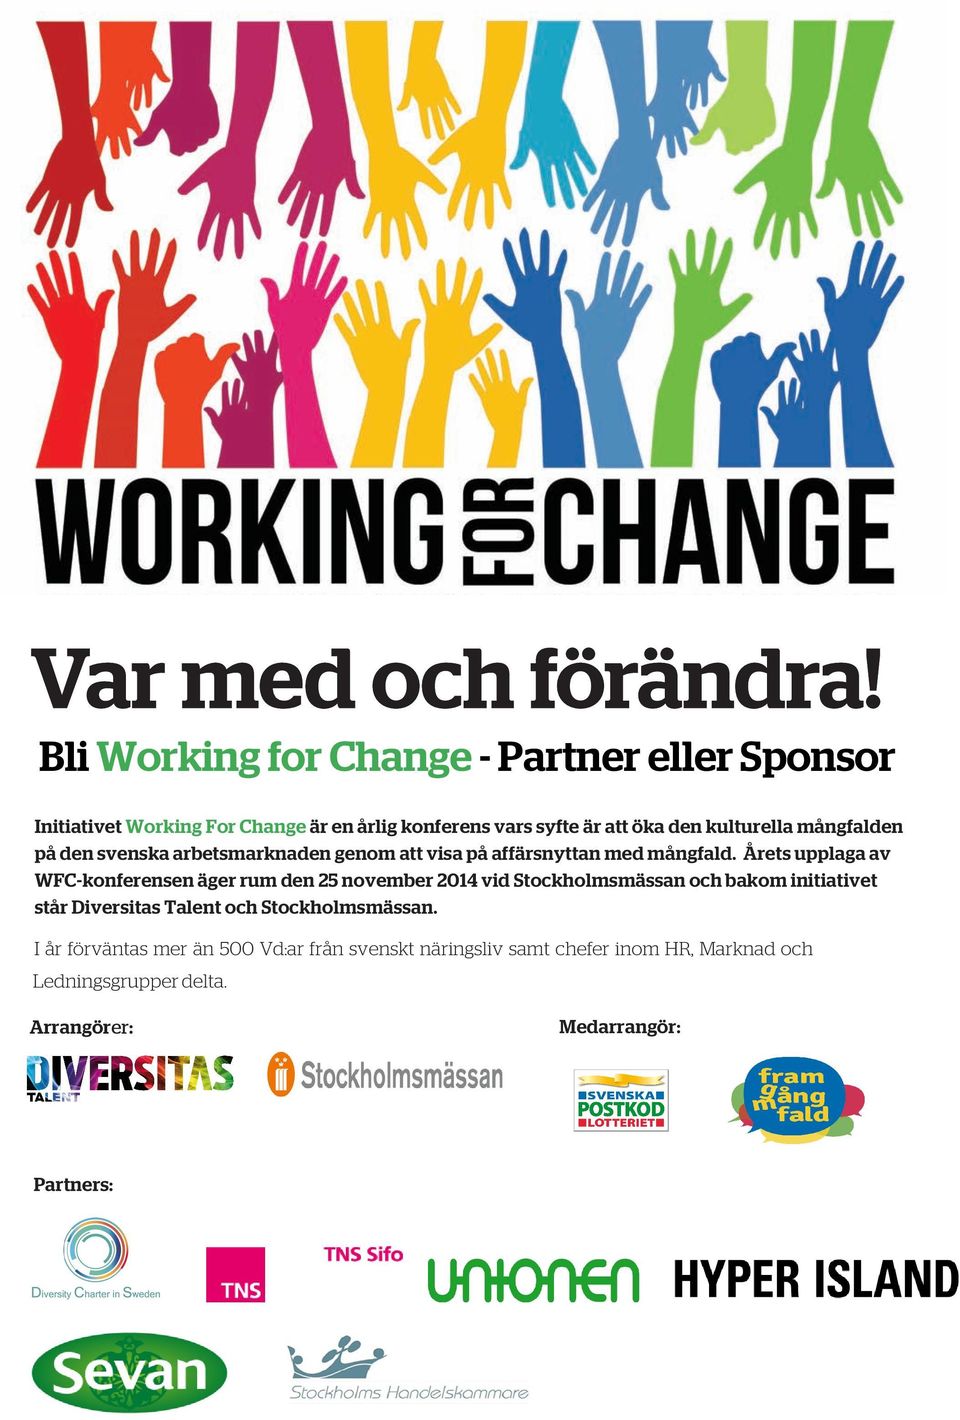 Årets upplaga av WFC-konferensen äger rum den 25 november 2014 vid Stockholmsmässan och bakom initiativet står Diversitas Talent